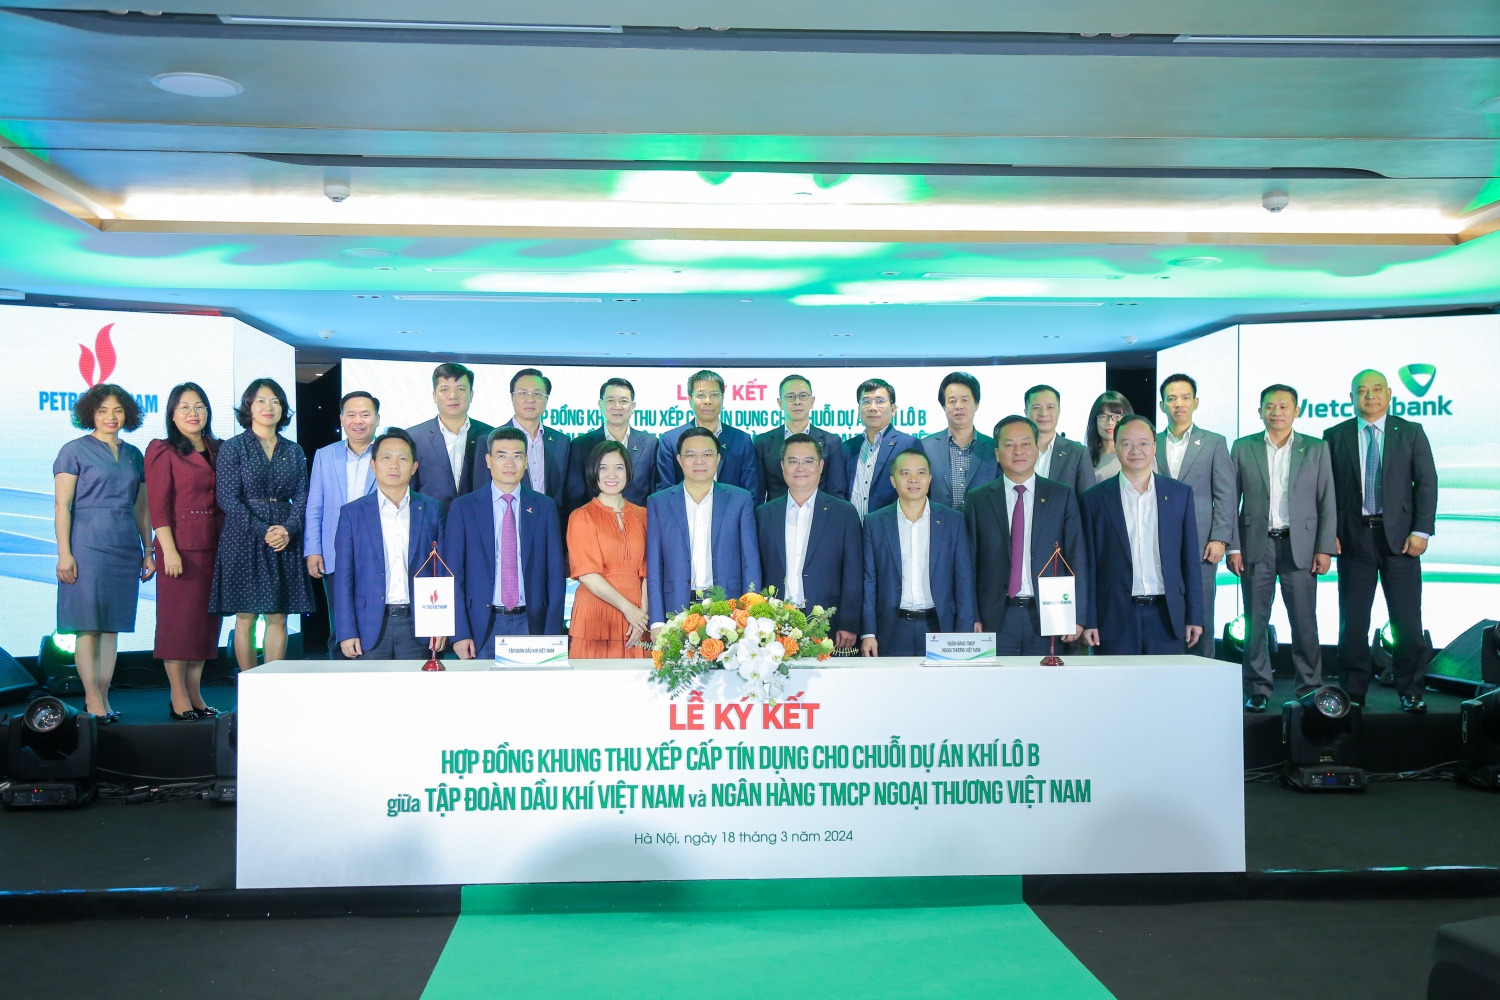 Petrovietnam và Vietcombank ký kết hợp đồng khung thu xếp cấp tín dụng cho chuỗi dự án khí điện Lô B